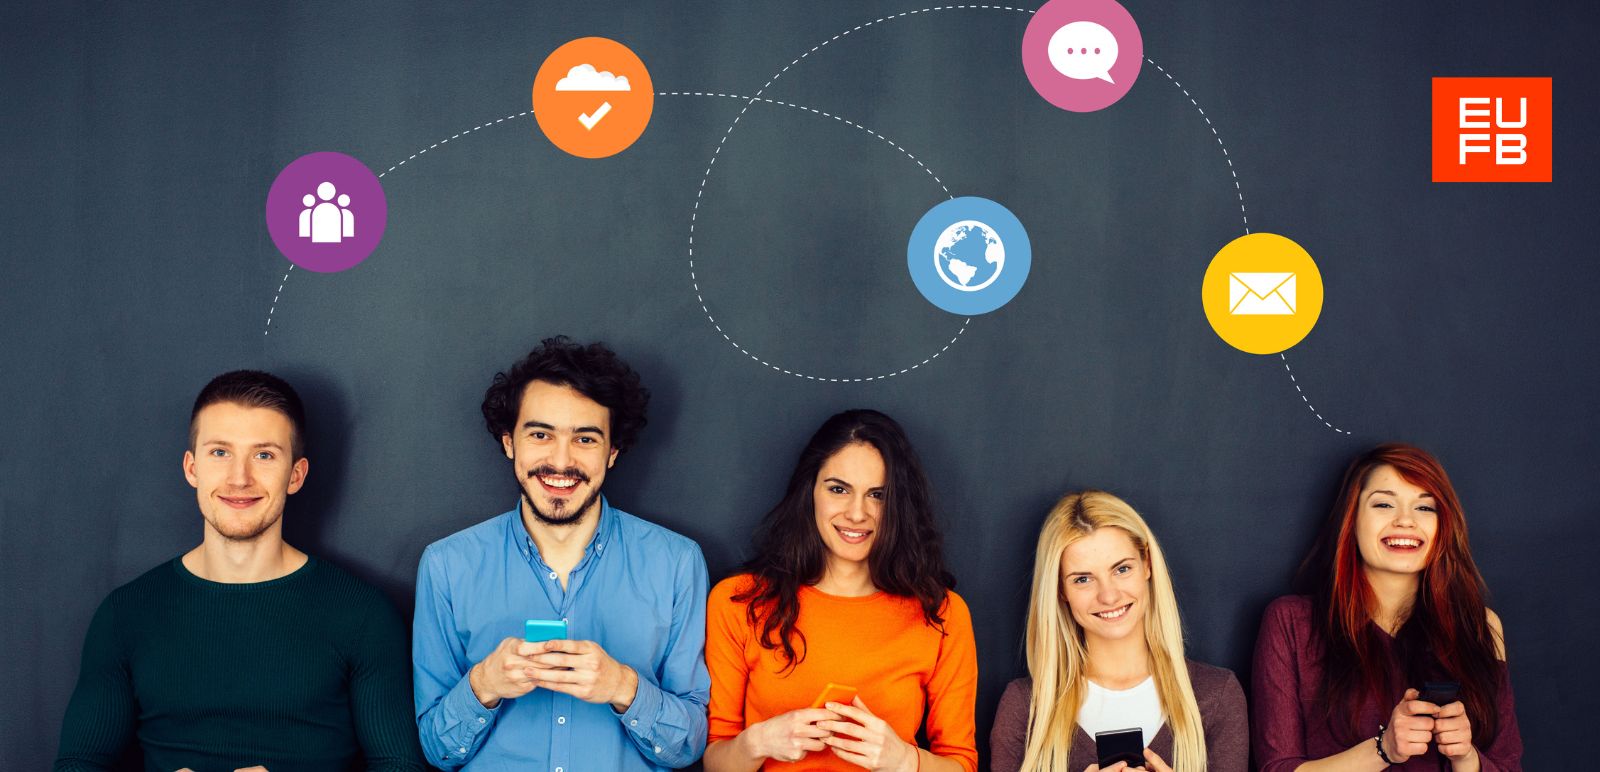 El paper de les xarxes sociales en les relacions públiques i el màrqueting | Escola Universitària Formatic Barcelona